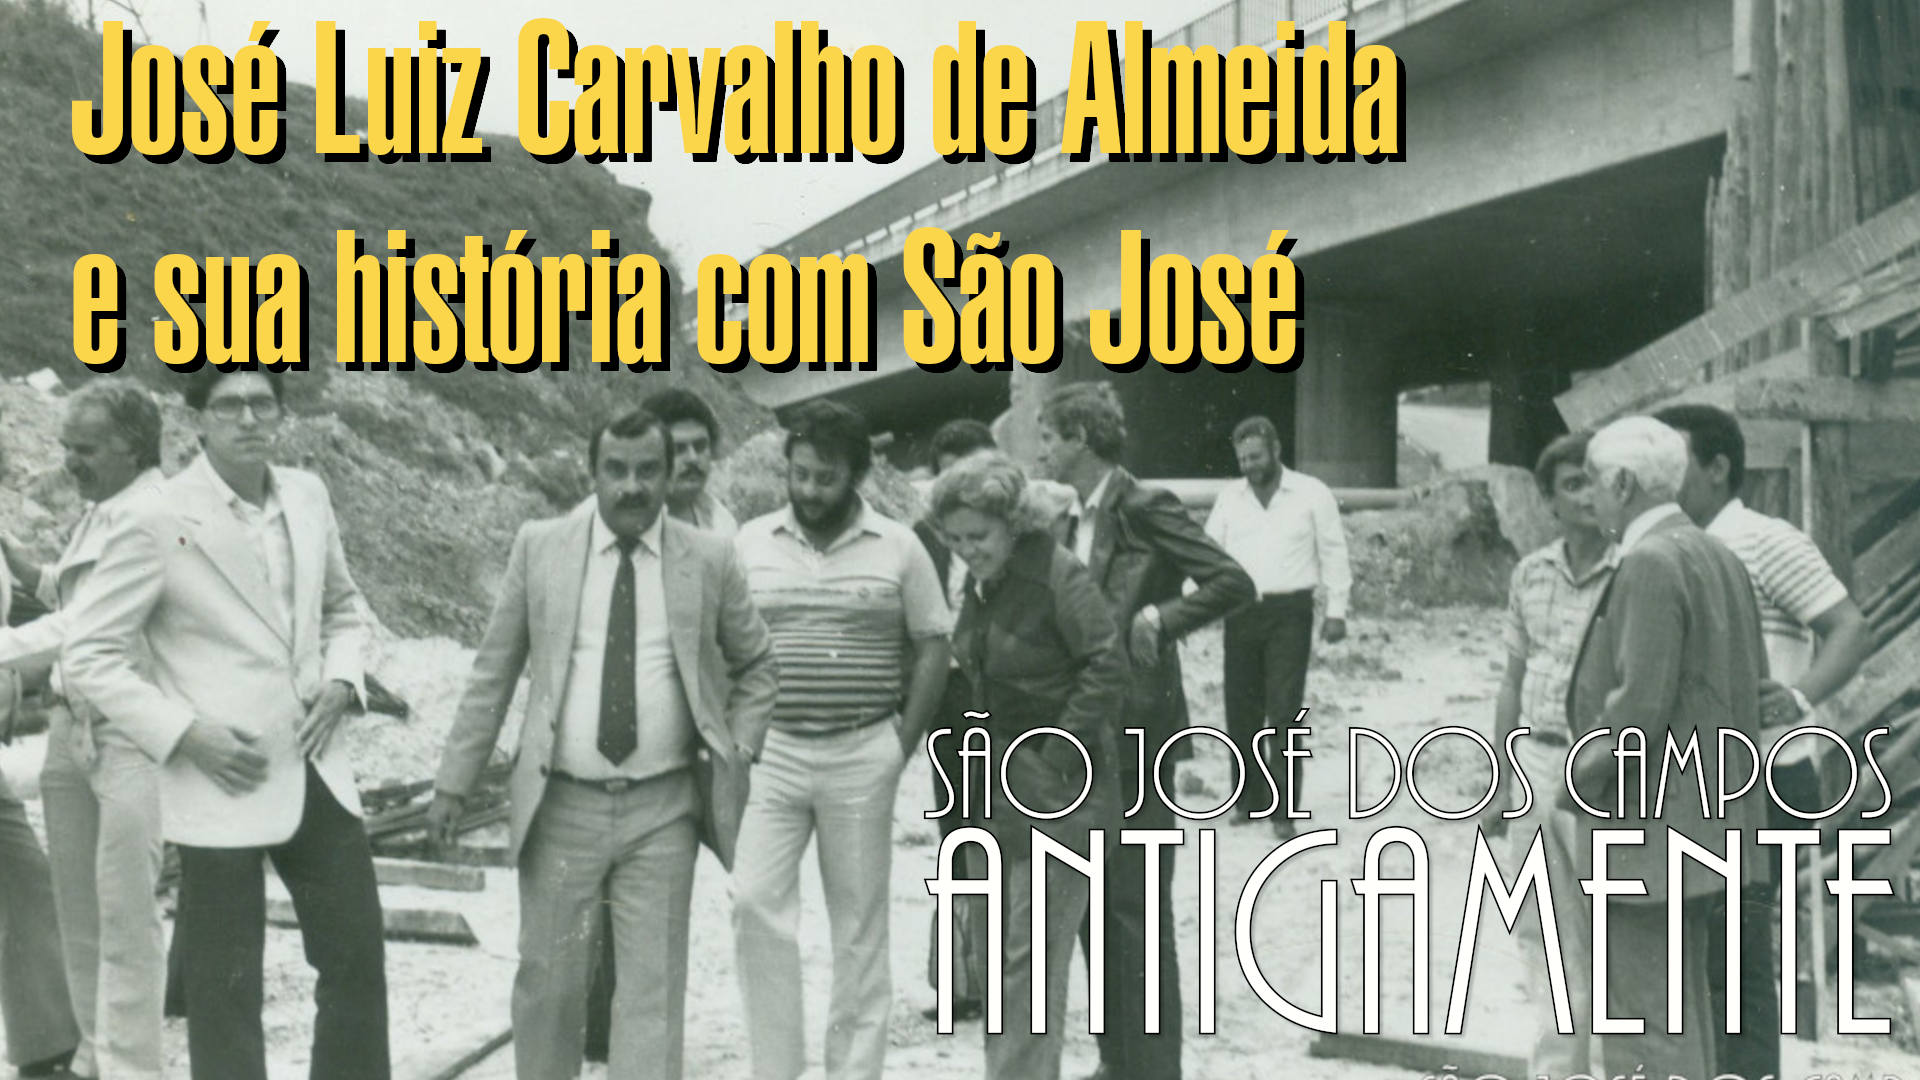 José Luiz de Almeida e sua história com São José